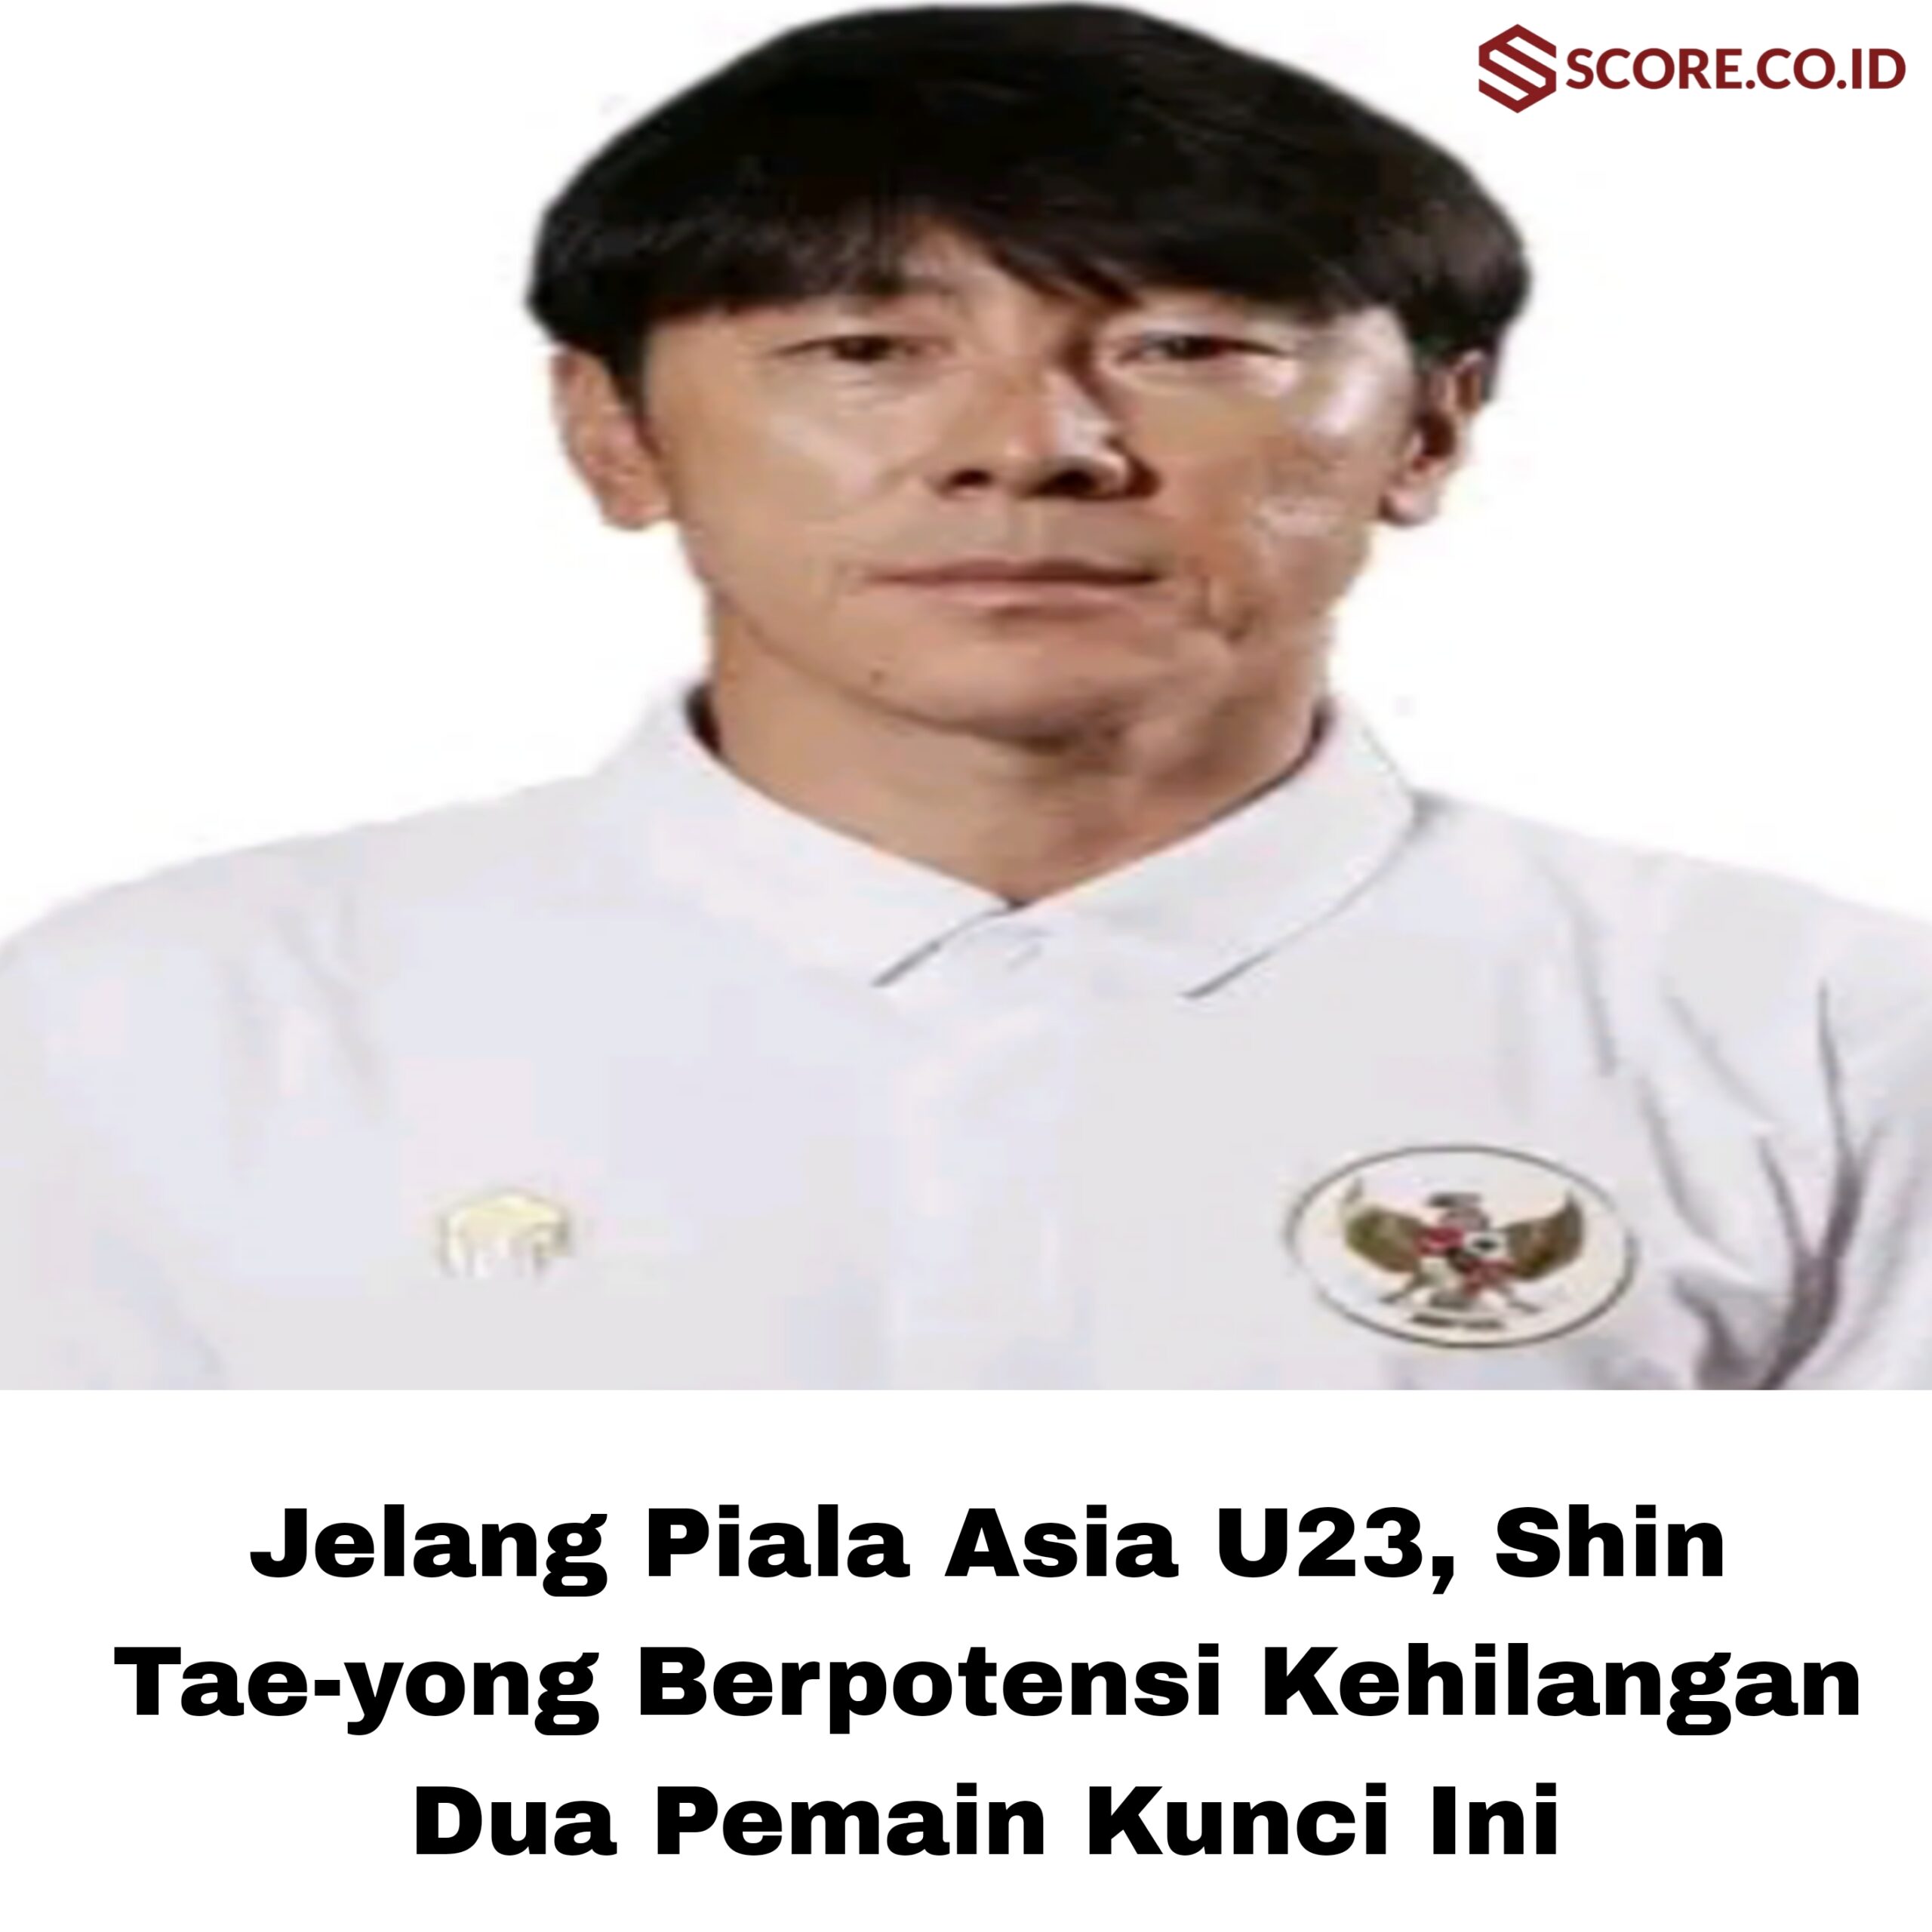 Jelang Piala Asia U23, Shin Tae-yong Berpotensi Kehilangan Dua Pemain Kunci Ini